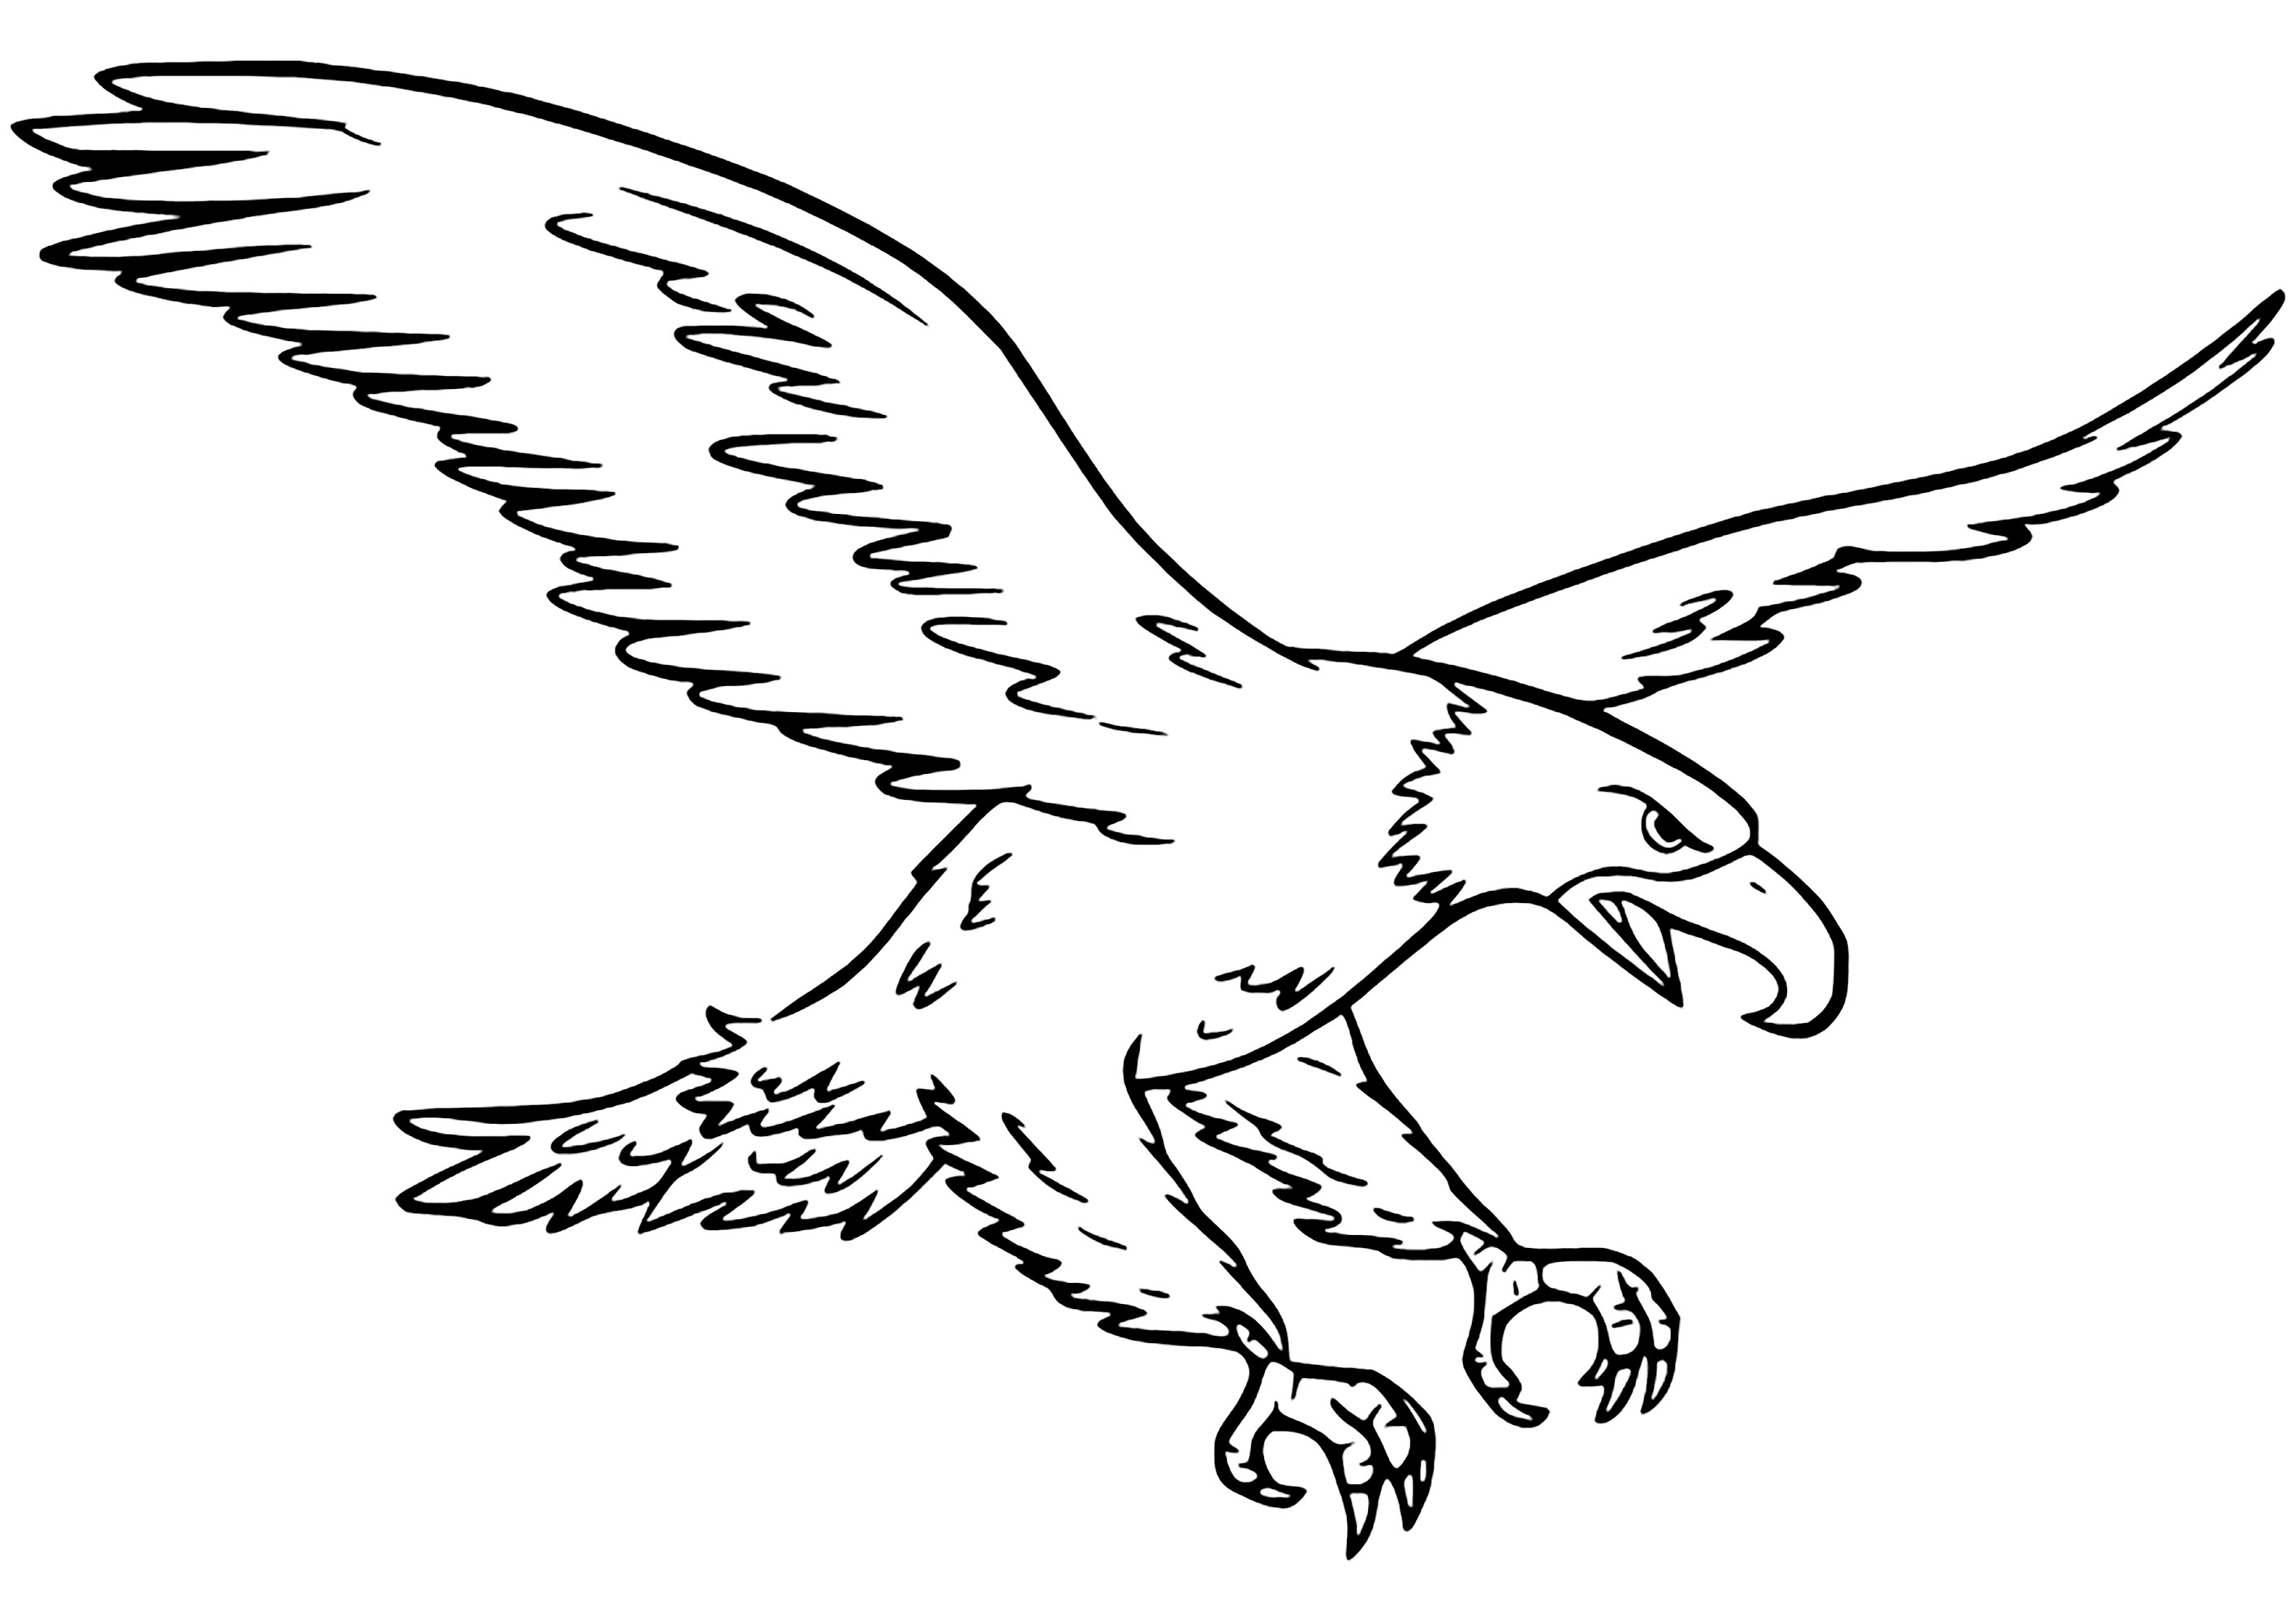 Colorear una majestuosa águila. Pocas zonas para colorear, muy realista